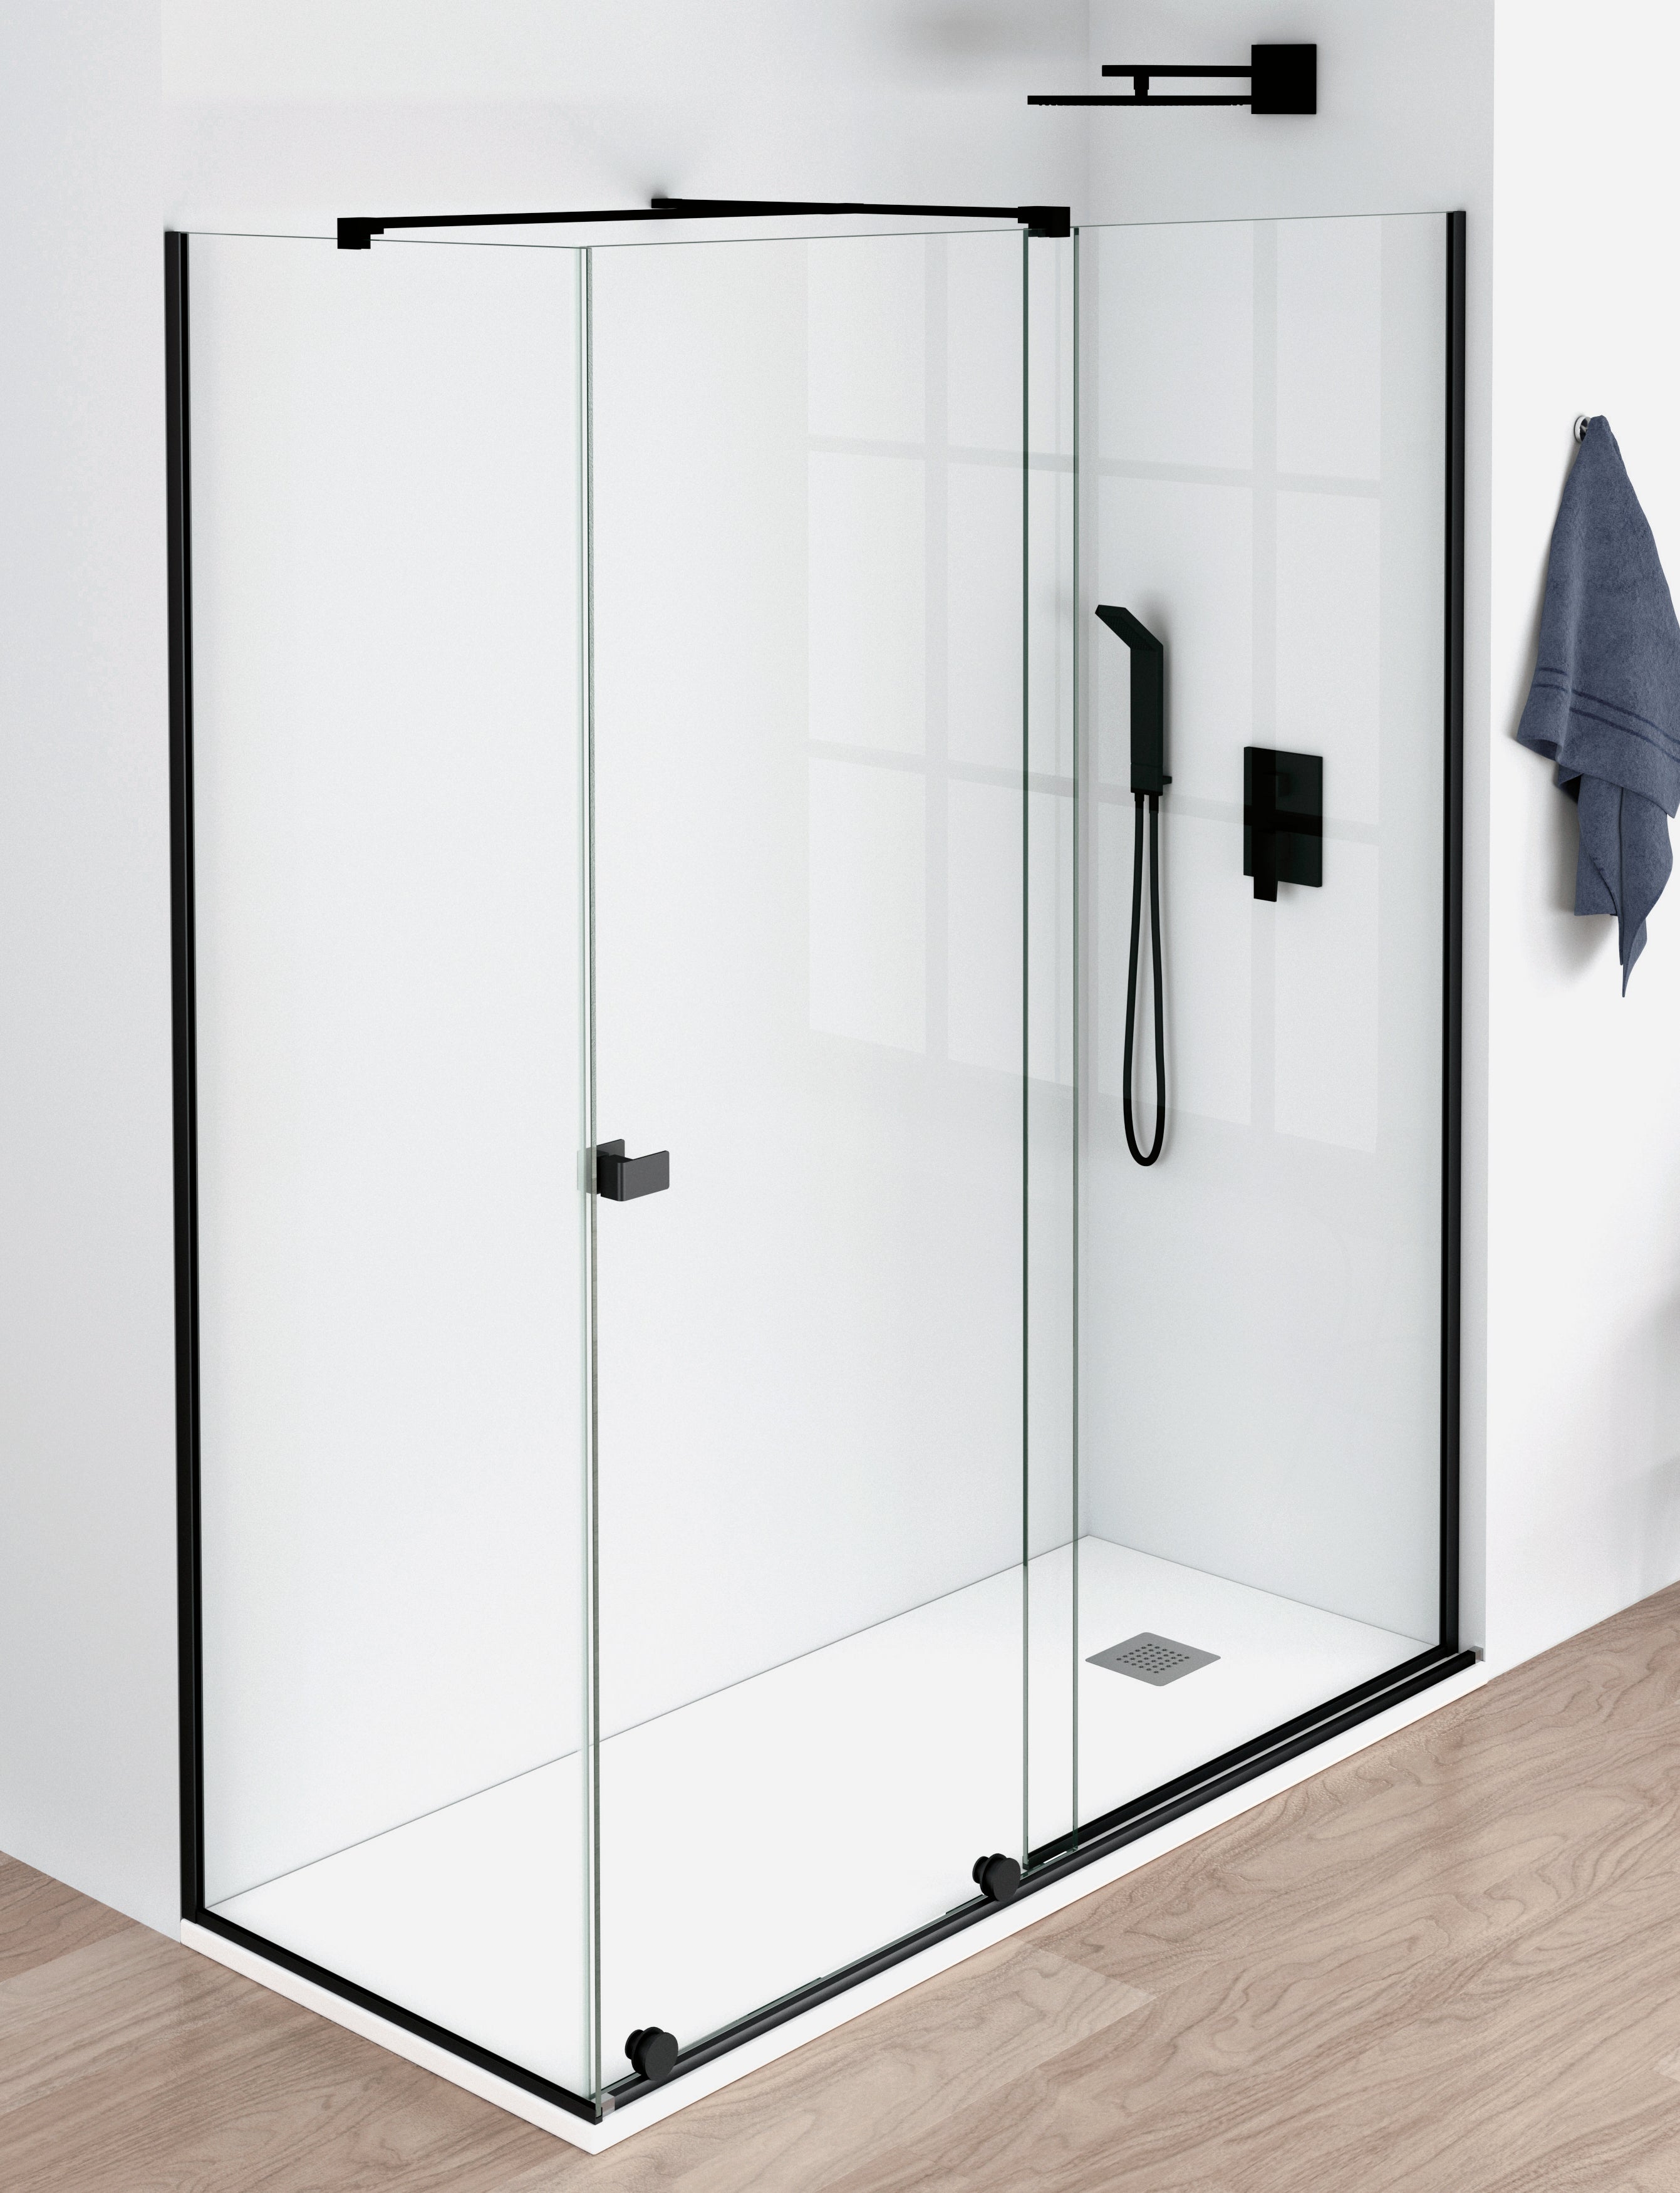 Frontal de ducha-mampara modelo CLIO-BECRISA-fijo y puerta corredera